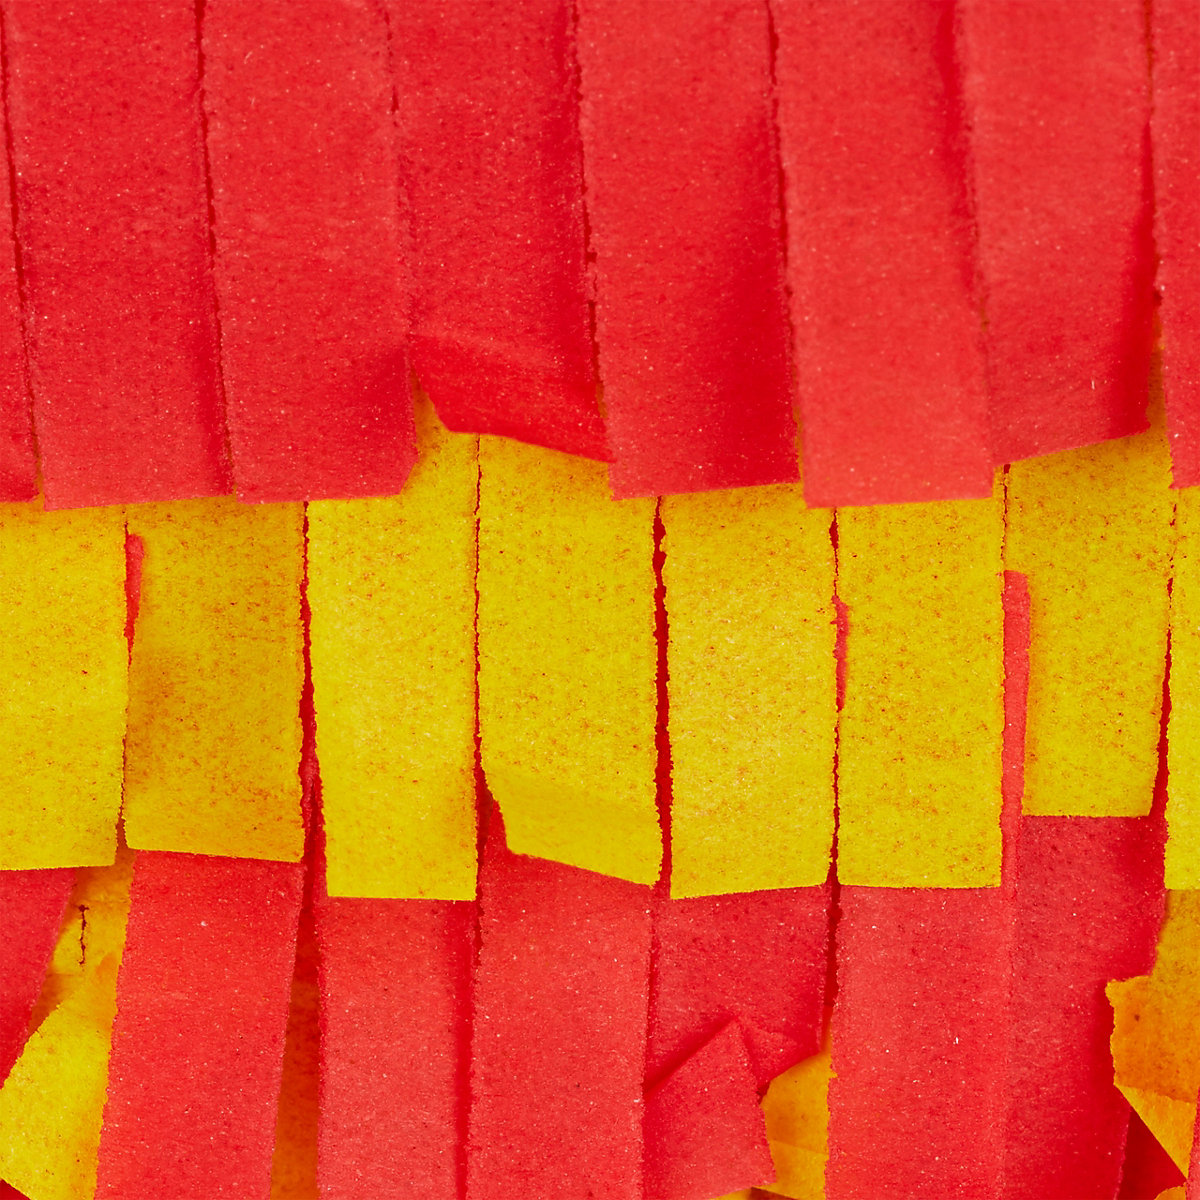 Augenmaske Pinatastock 3 tlg Piñata Weihnachten Deko Pinata Set Stern silber